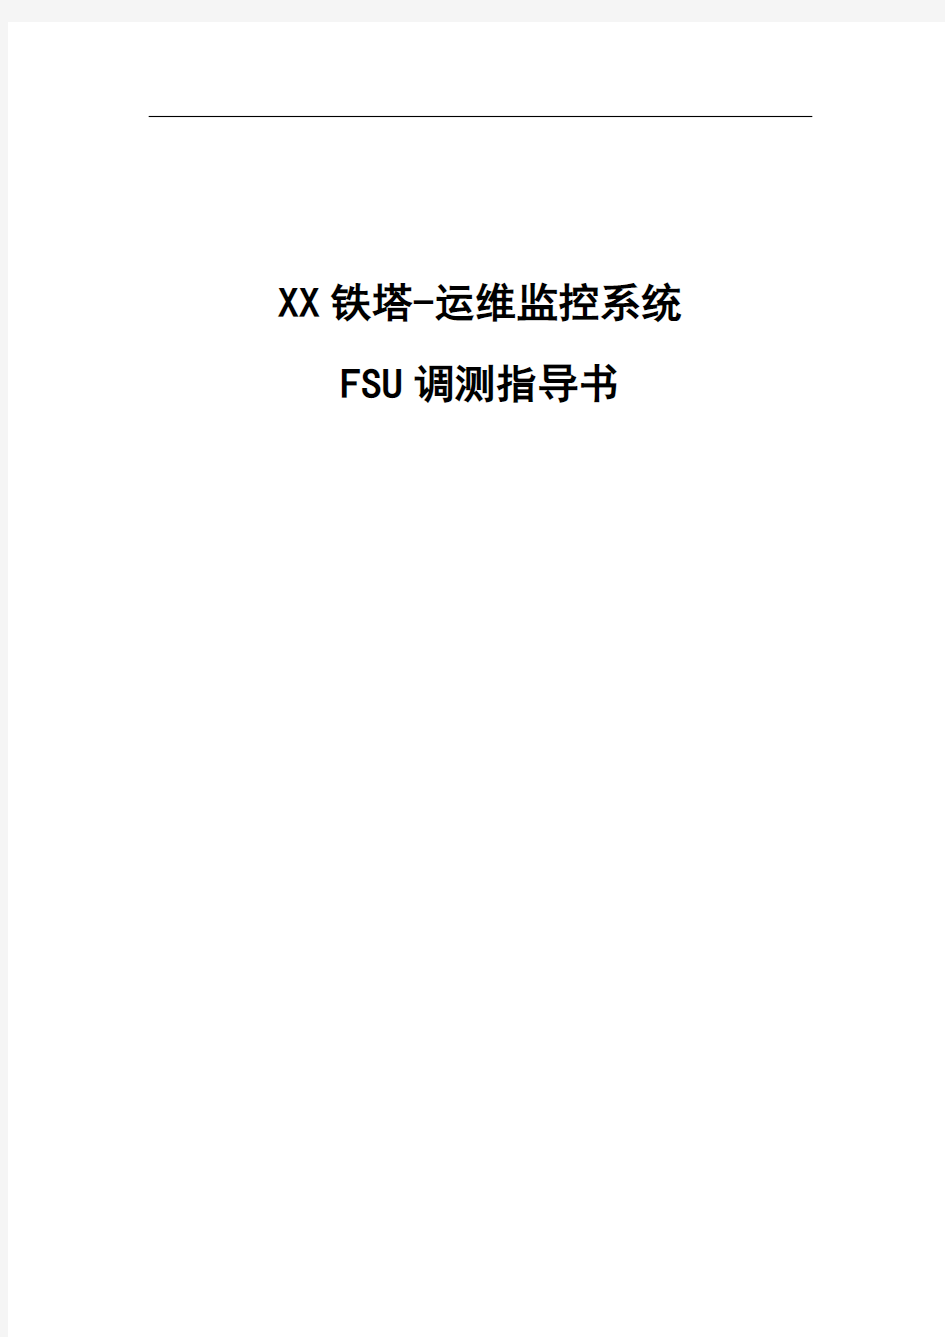 XX铁塔运维监控系统FSU调测指导书